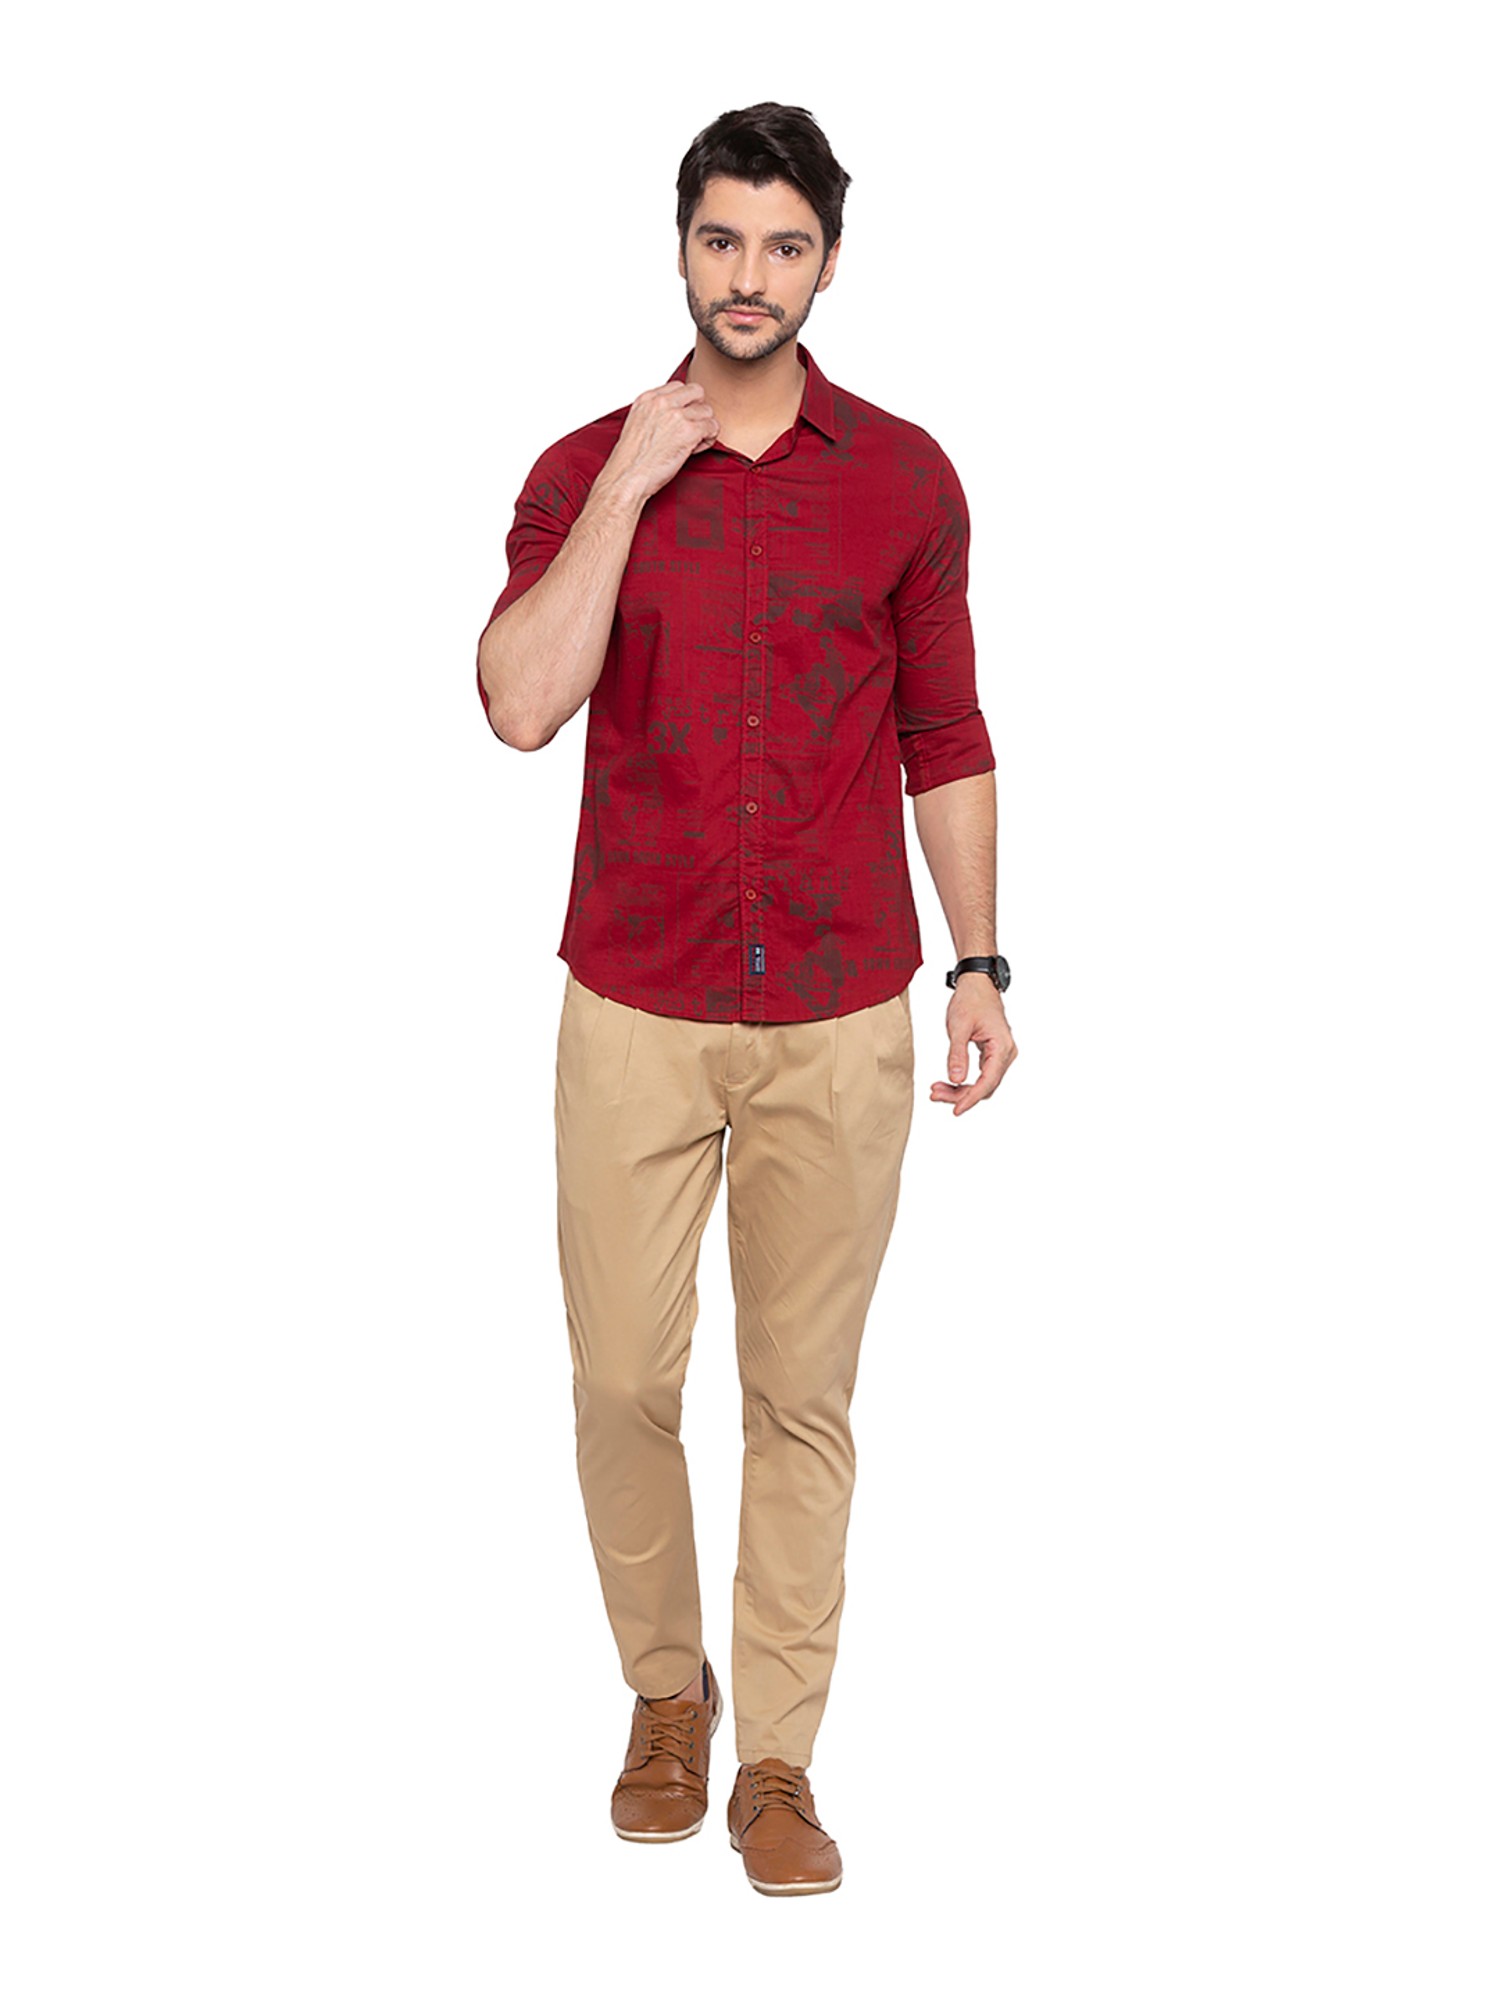 Allen Solly Men Solid Party Red Shirt  Buy Allen Solly Men Solid Party Red  Shirt Online at Best Prices in India  Flipkartcom